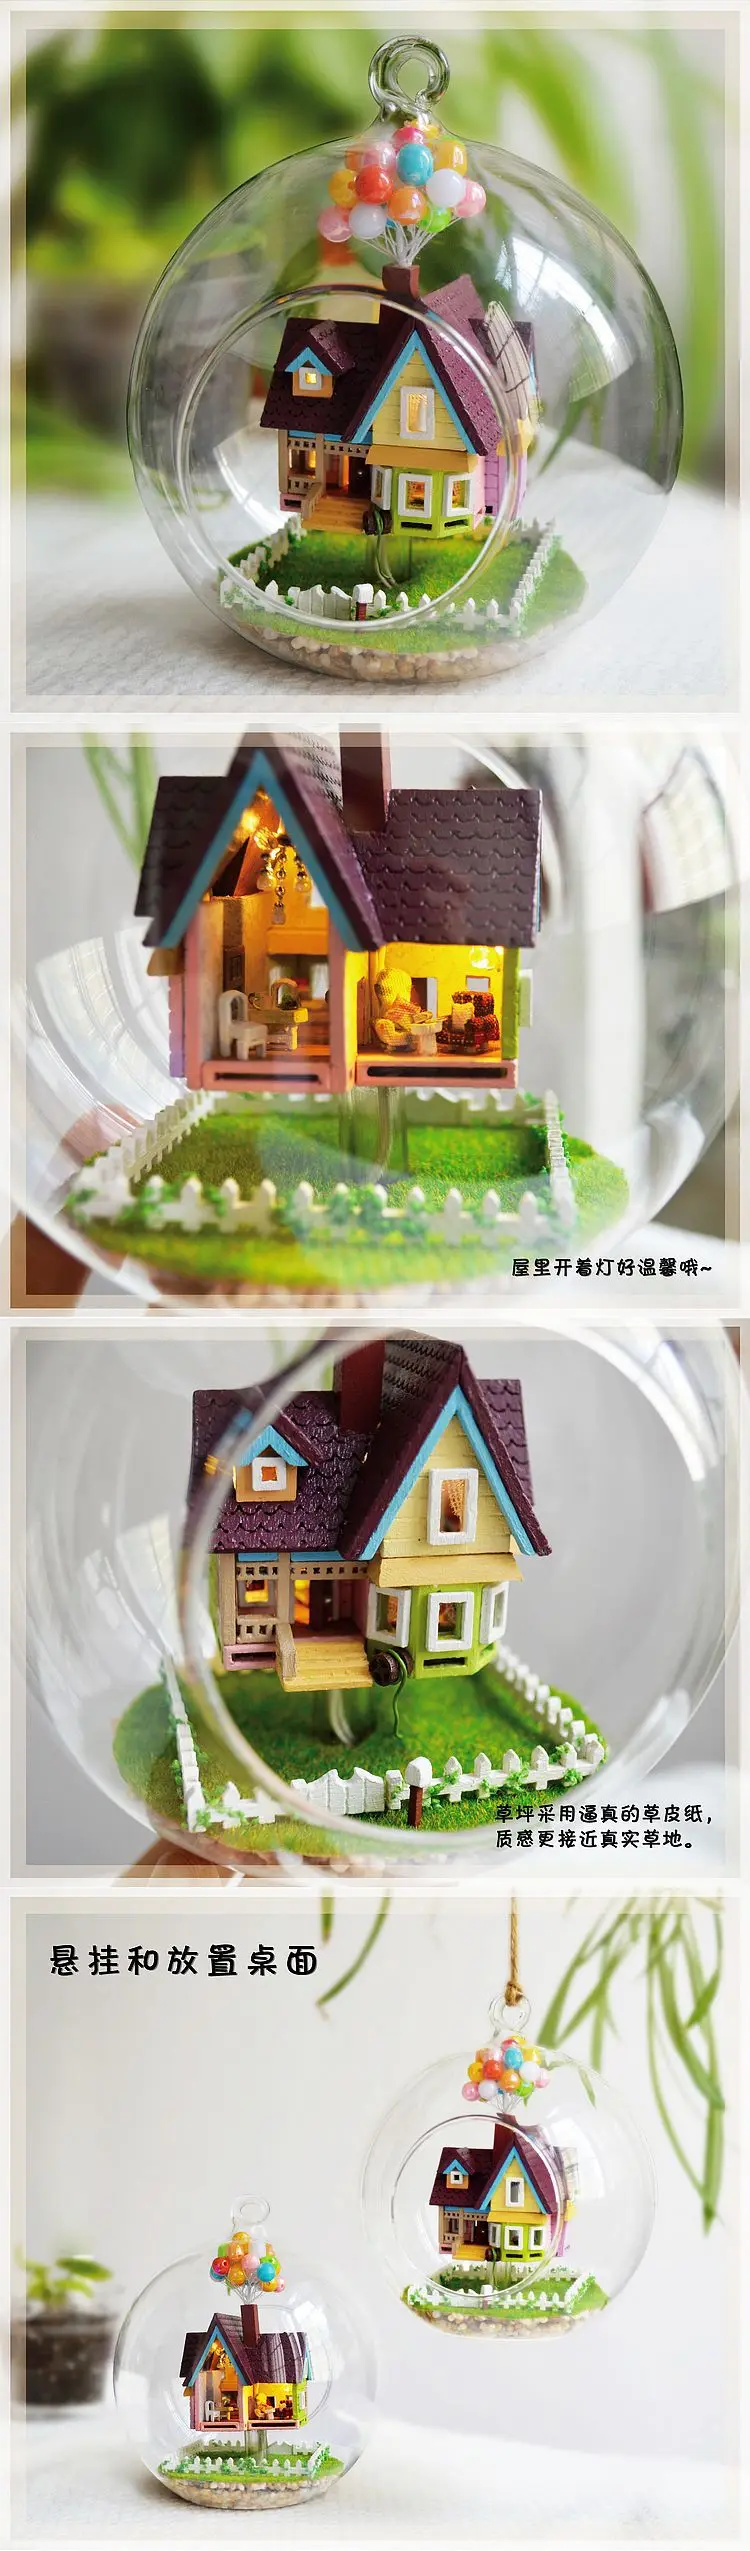 Кукольный дом мебель Diy Миниатюрный пылезащитный чехол 3D деревянный дом Miniaturas Revelations Кукольный дом Каса театр Каса комната коробка